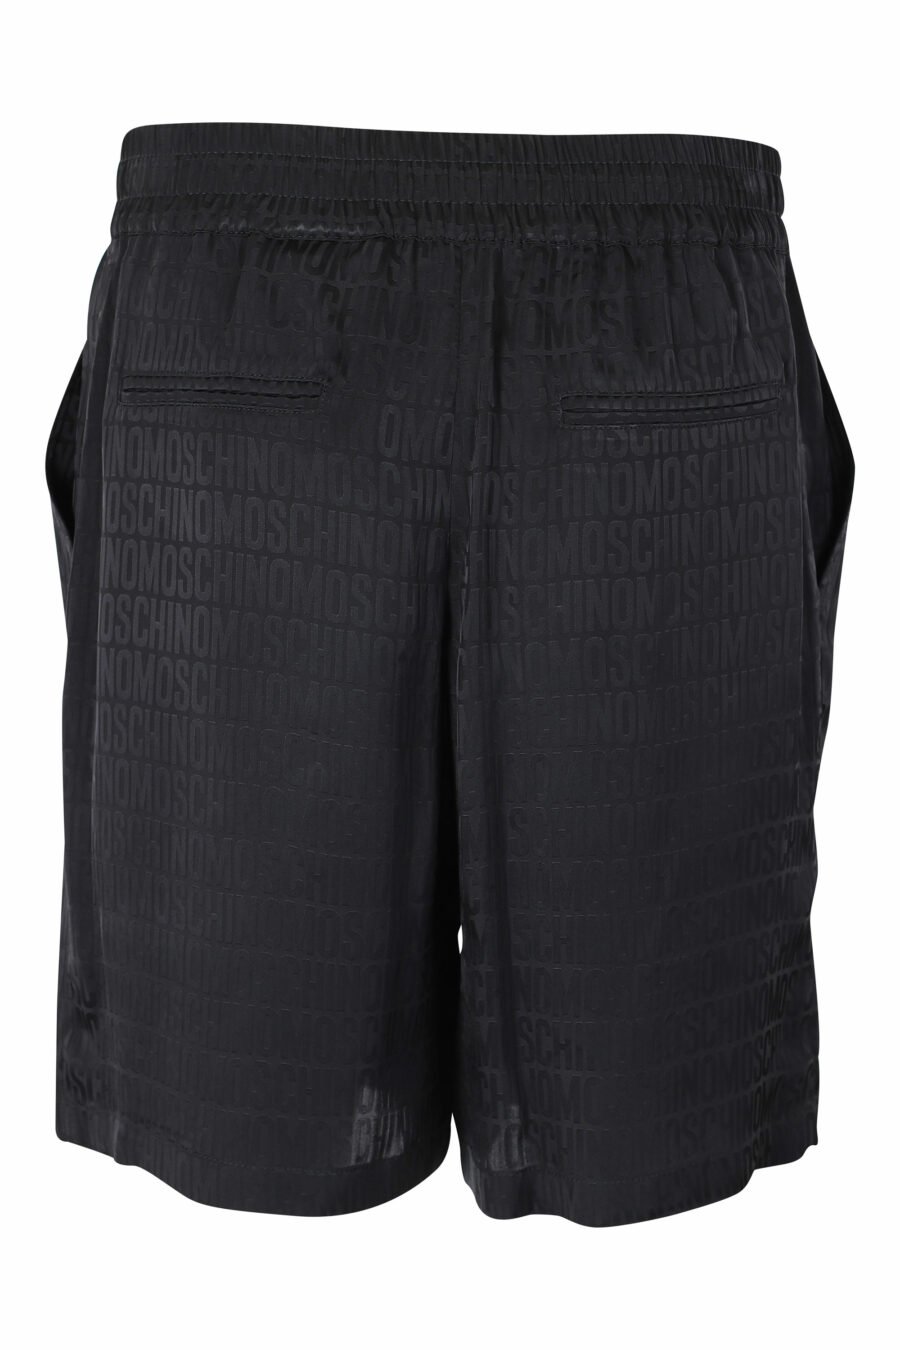 Pantalón corto negro "all over logo" monocromático - IMG 9601